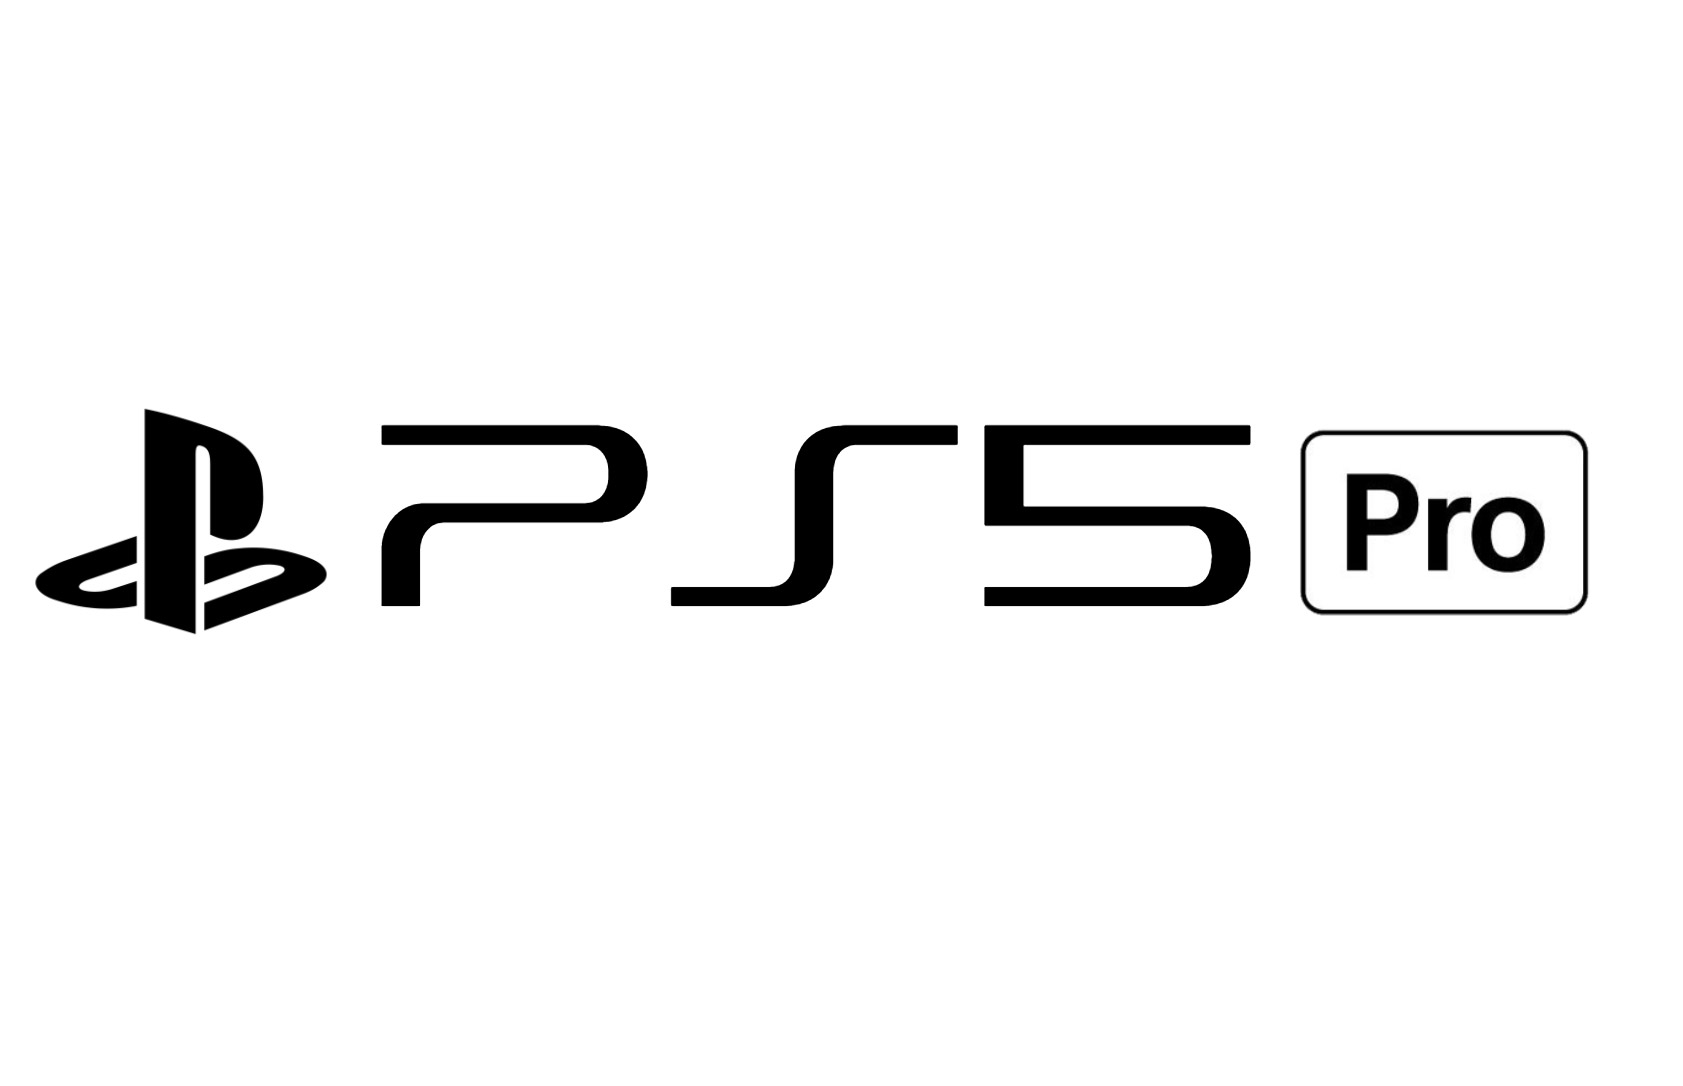 Sony PlayStation 5 Pro будет гораздо мощнее PlayStation 5, но с тем же ценником